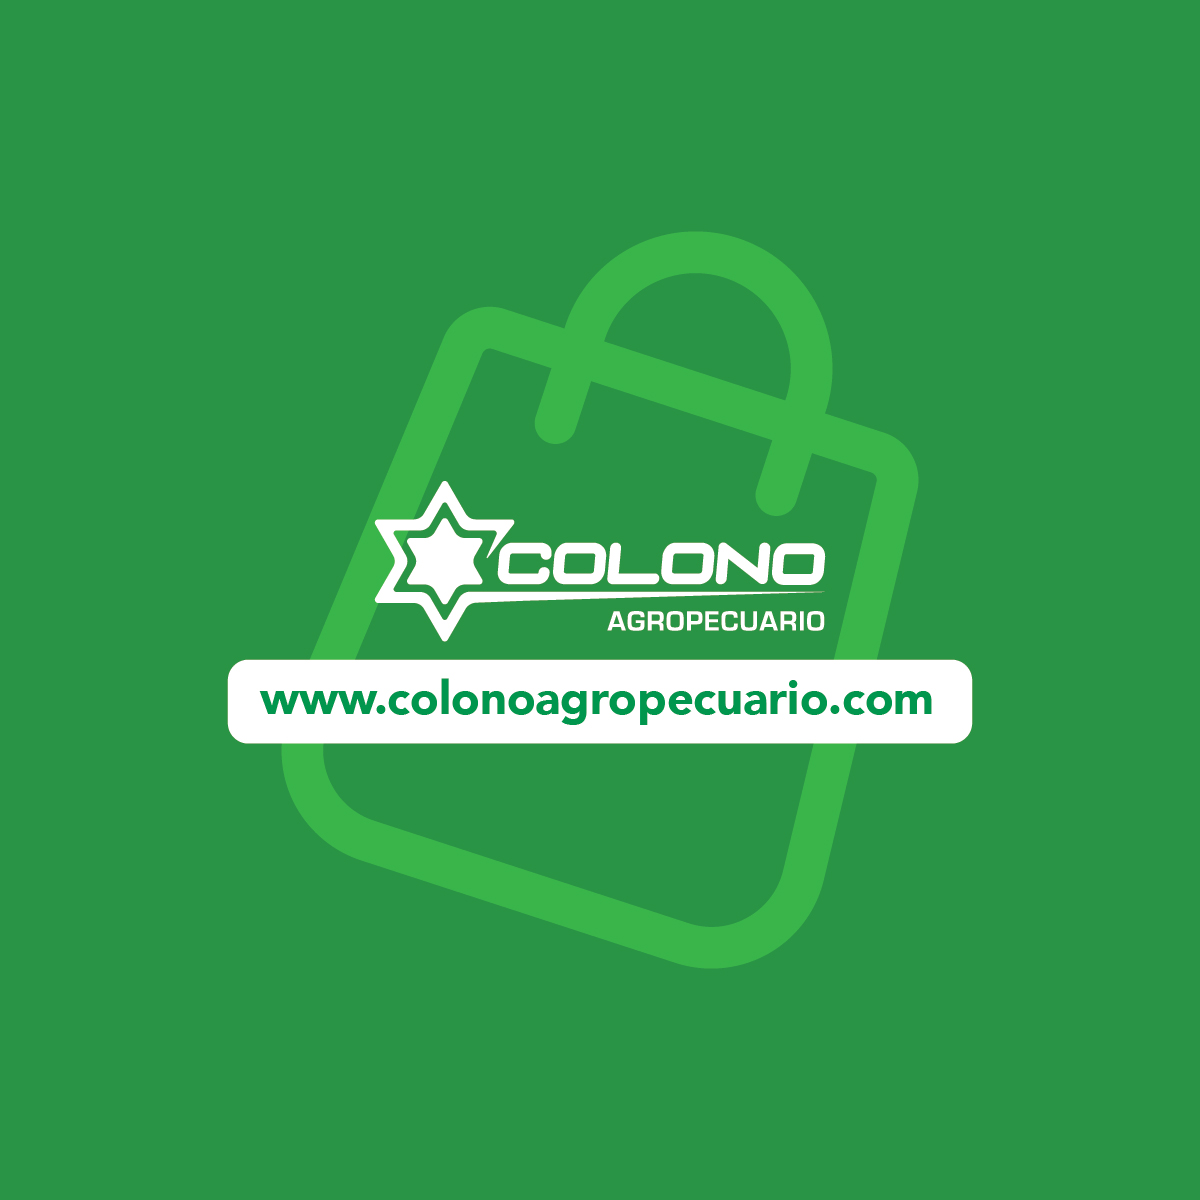 (c) Colonoagropecuario.com